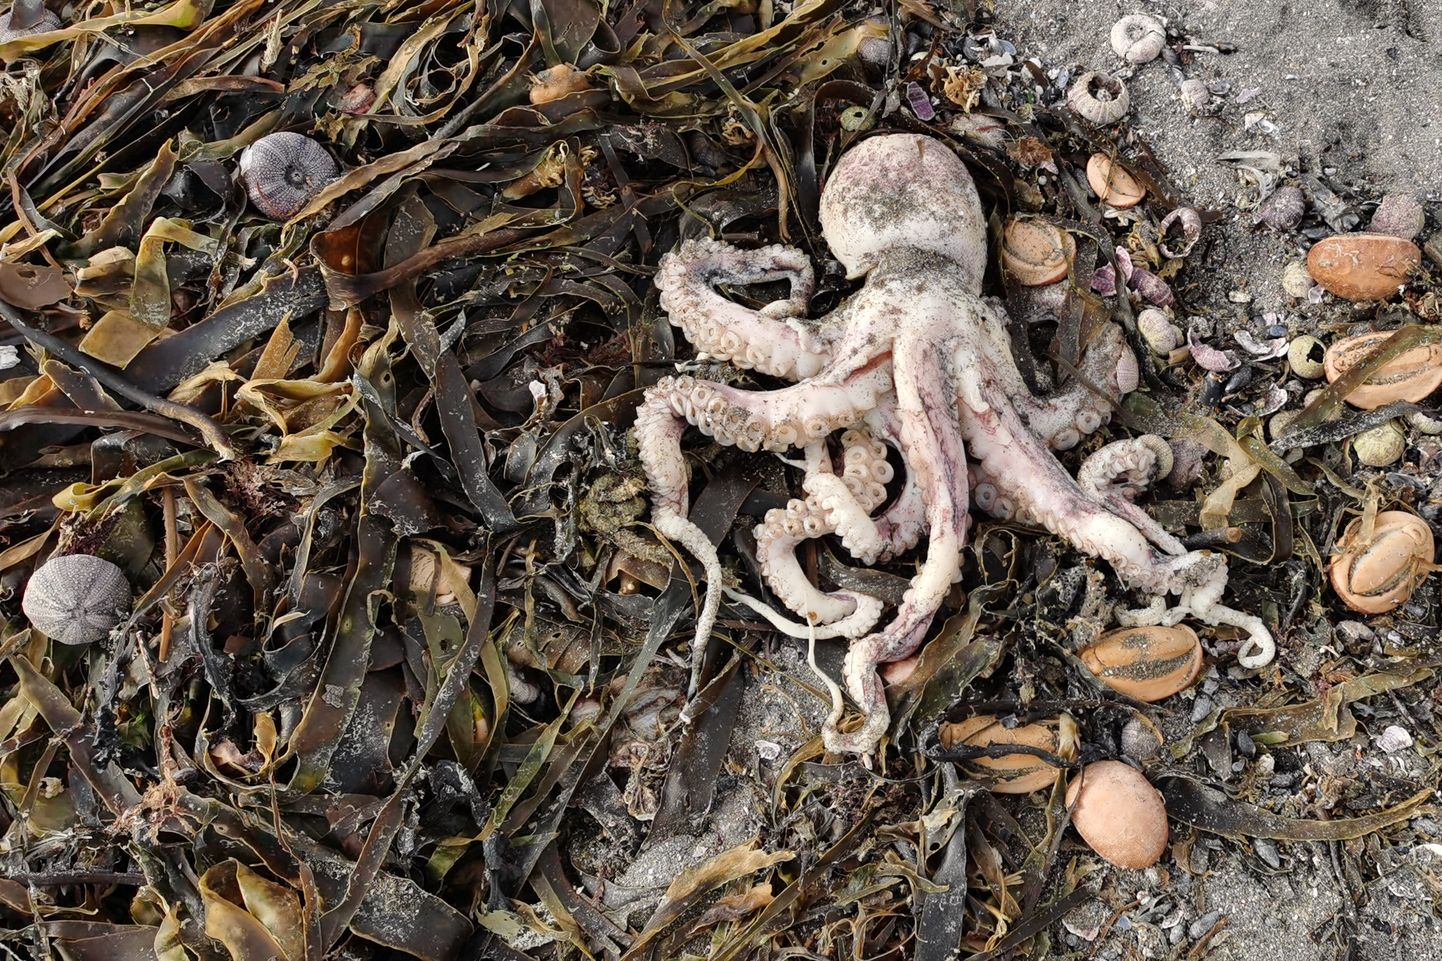 Мертвые морские существа на пляже в Бухте спасения, Камчатка. 4 октября, 2020.